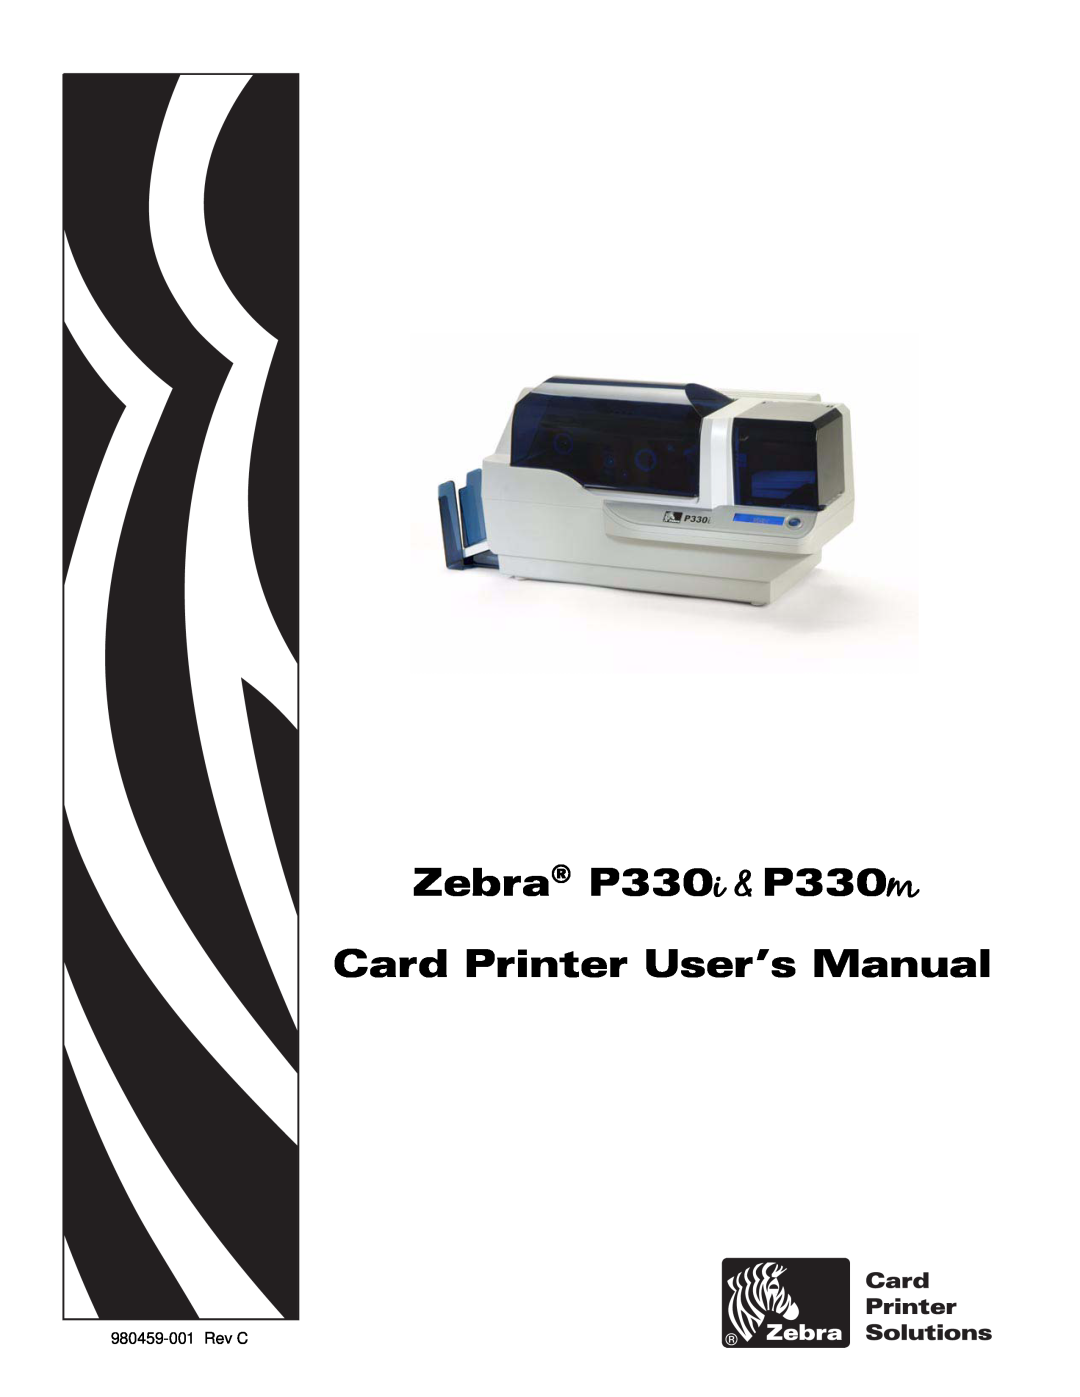 Zebra Technologies user manual Zebra P330i & P330m Card Printer User’s Manual, Rev C 